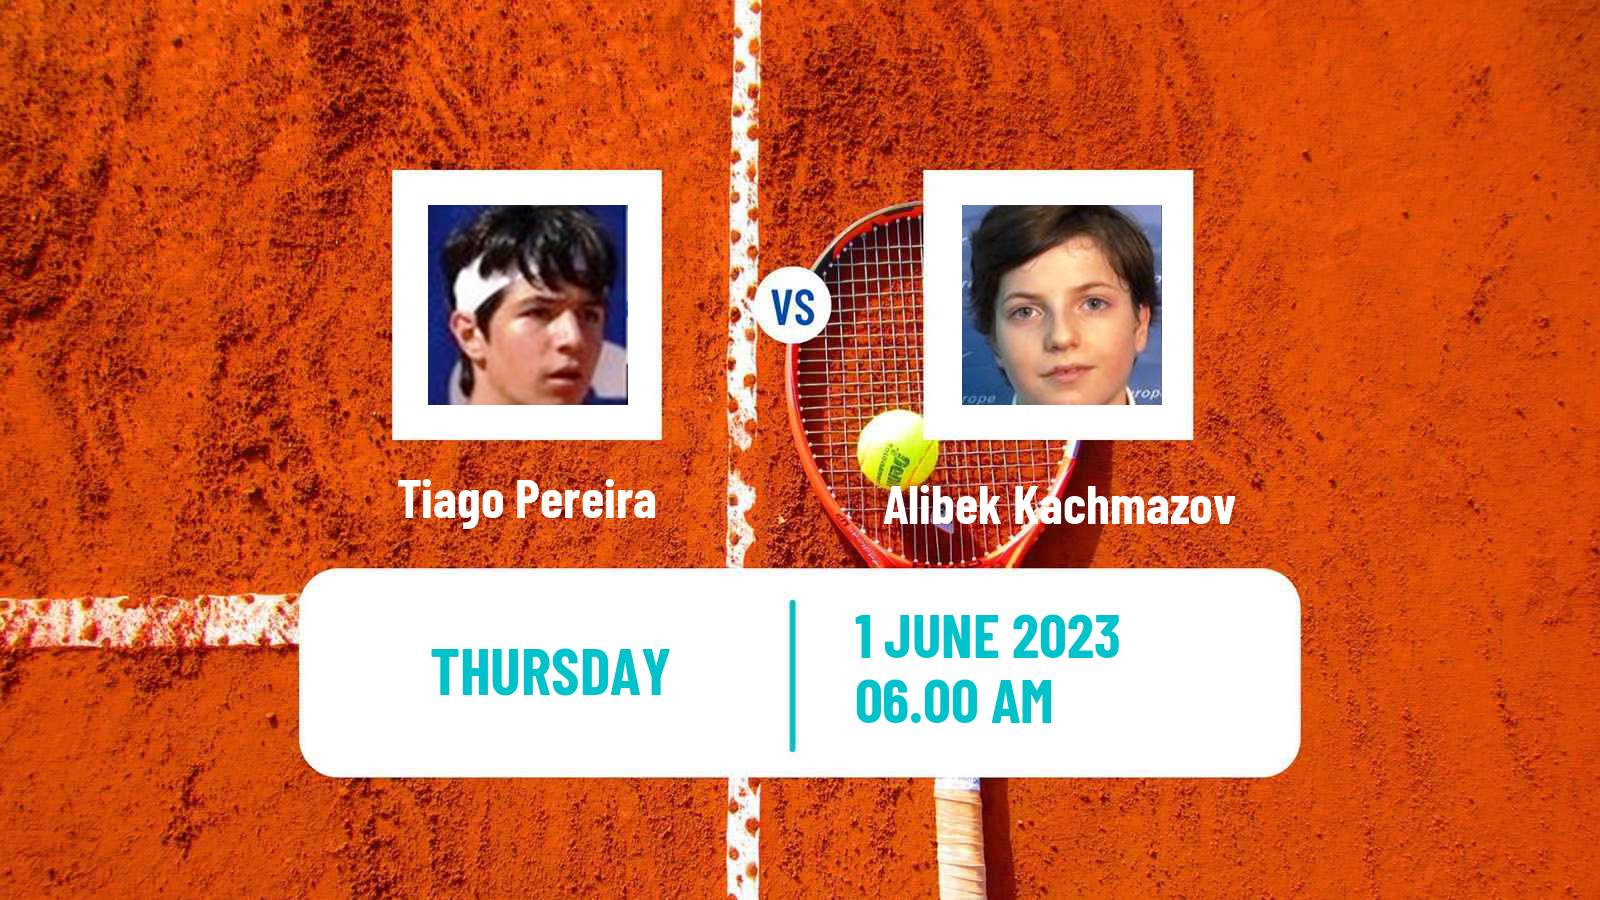 Tennis ITF M25 La Nucia Men Tiago Pereira - Alibek Kachmazov